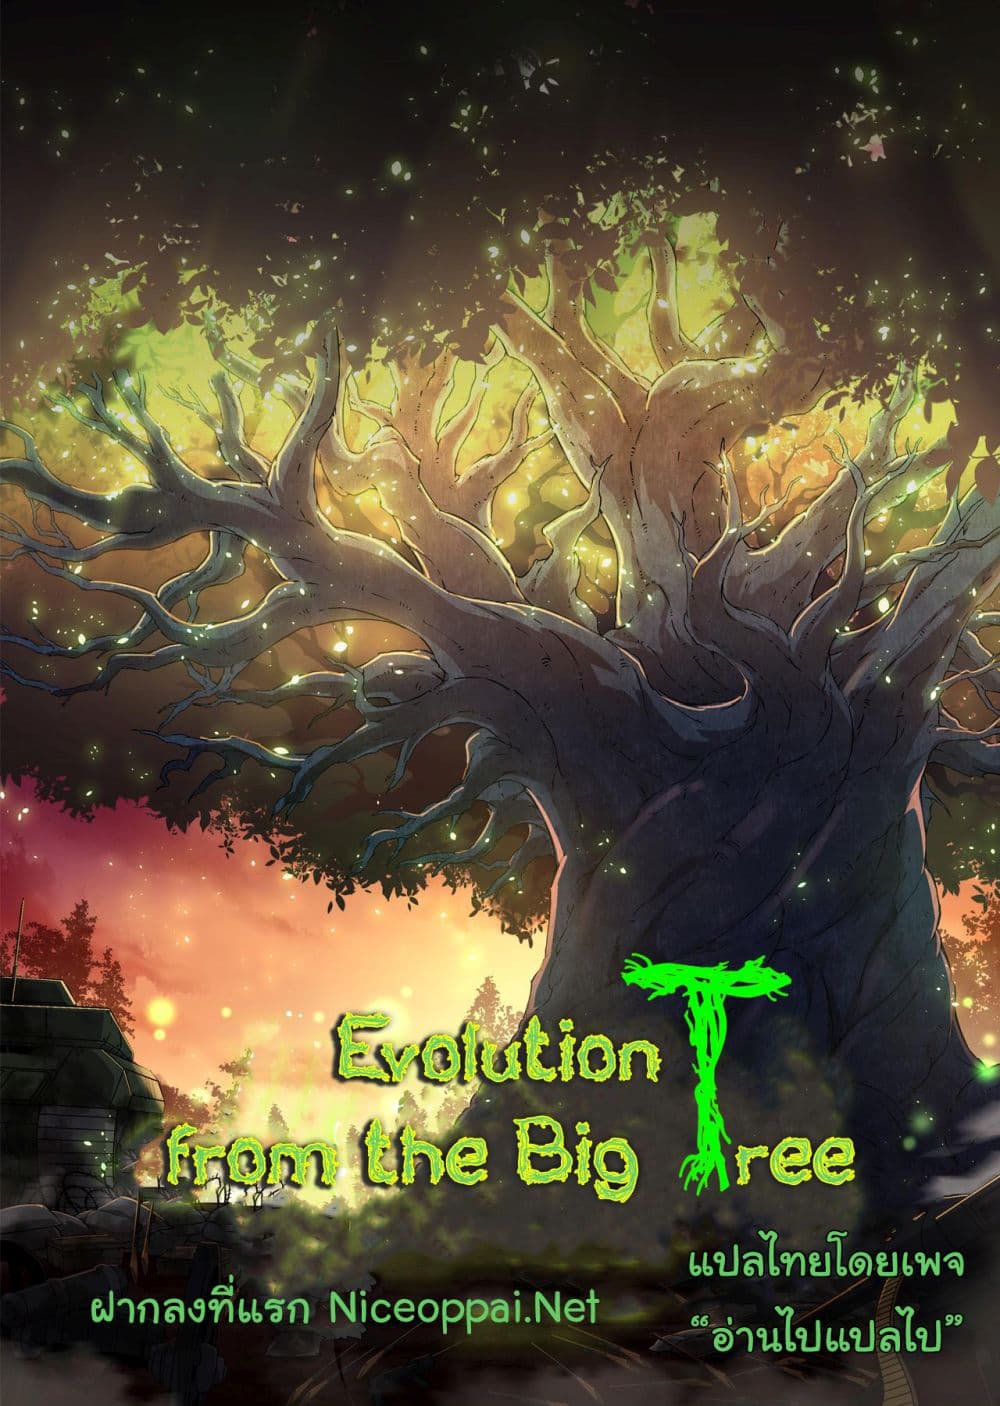 Evolution from the Big Tree Ã Â¸â€¢Ã Â¸Â­Ã Â¸â„¢Ã Â¸â€”Ã Â¸ÂµÃ Â¹Ë† 29 (1)